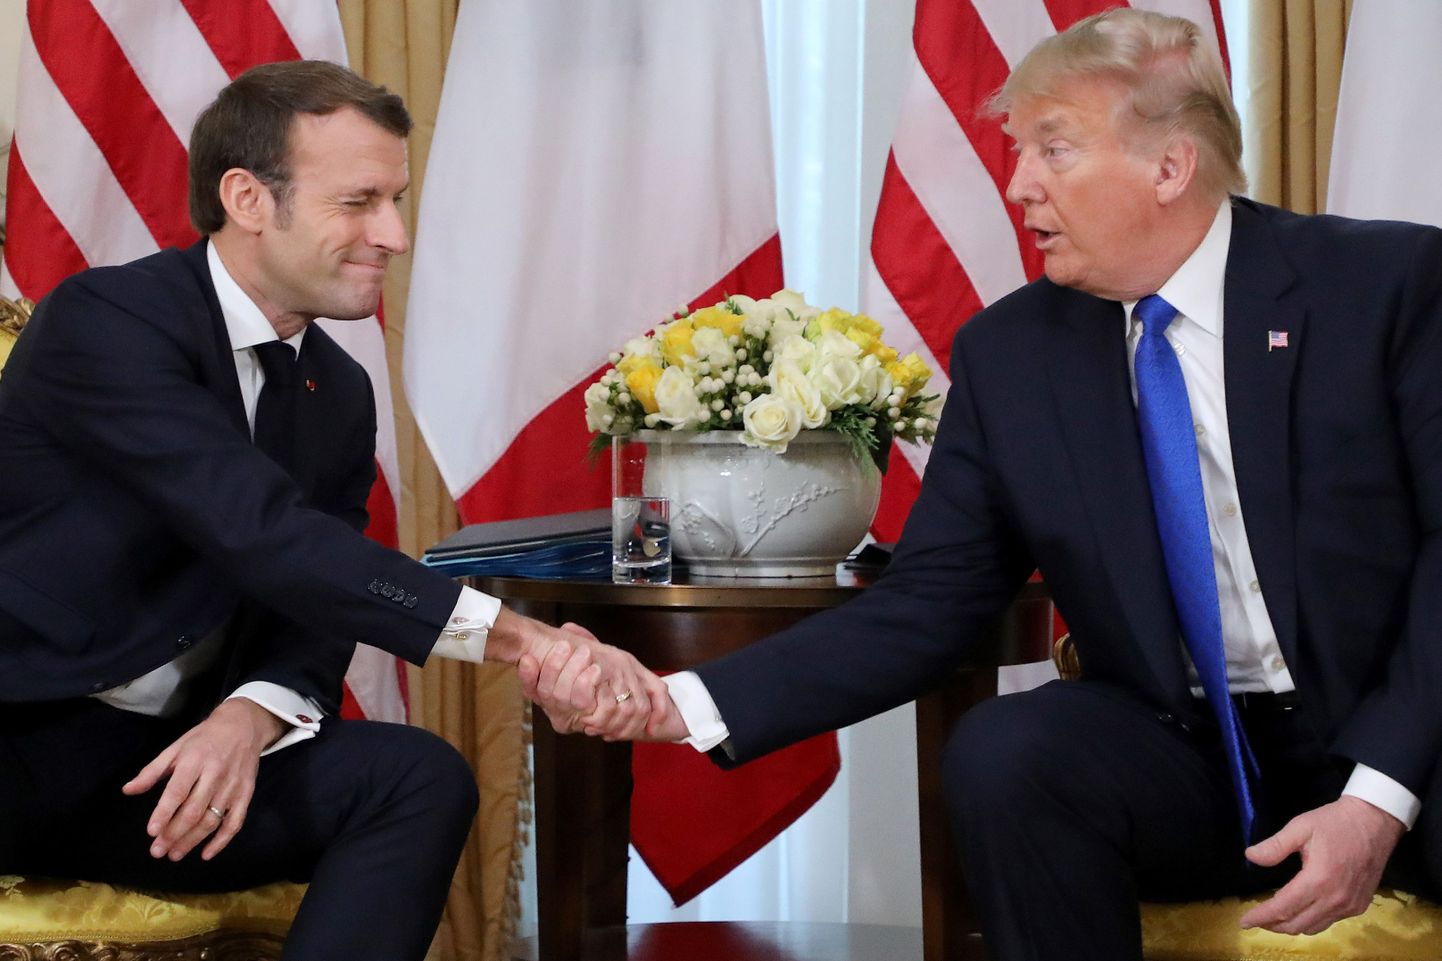 Prantsuse president Emmanuel Macron (vasakul) teisipäeval Londonis NATO liidrite kohtumise kõrvalt peetud kohtumisel USA presidendi Donald Trumpiga.